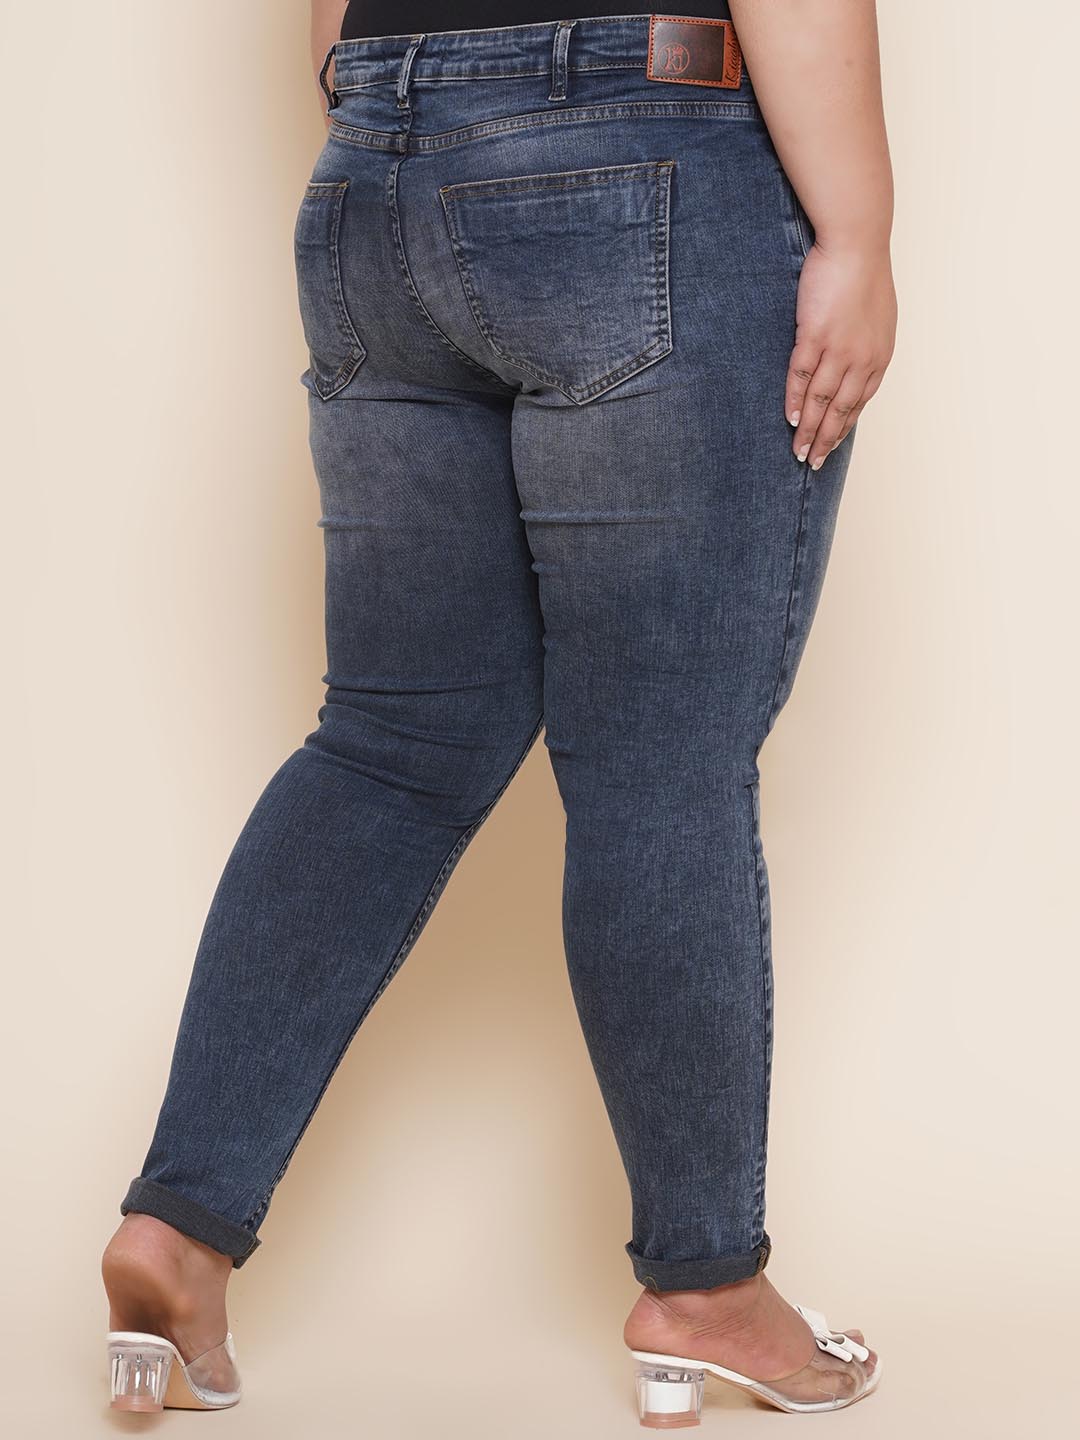 bottomwear_kiaahvi/jeans/KIJ6005/kij6005-5.jpg